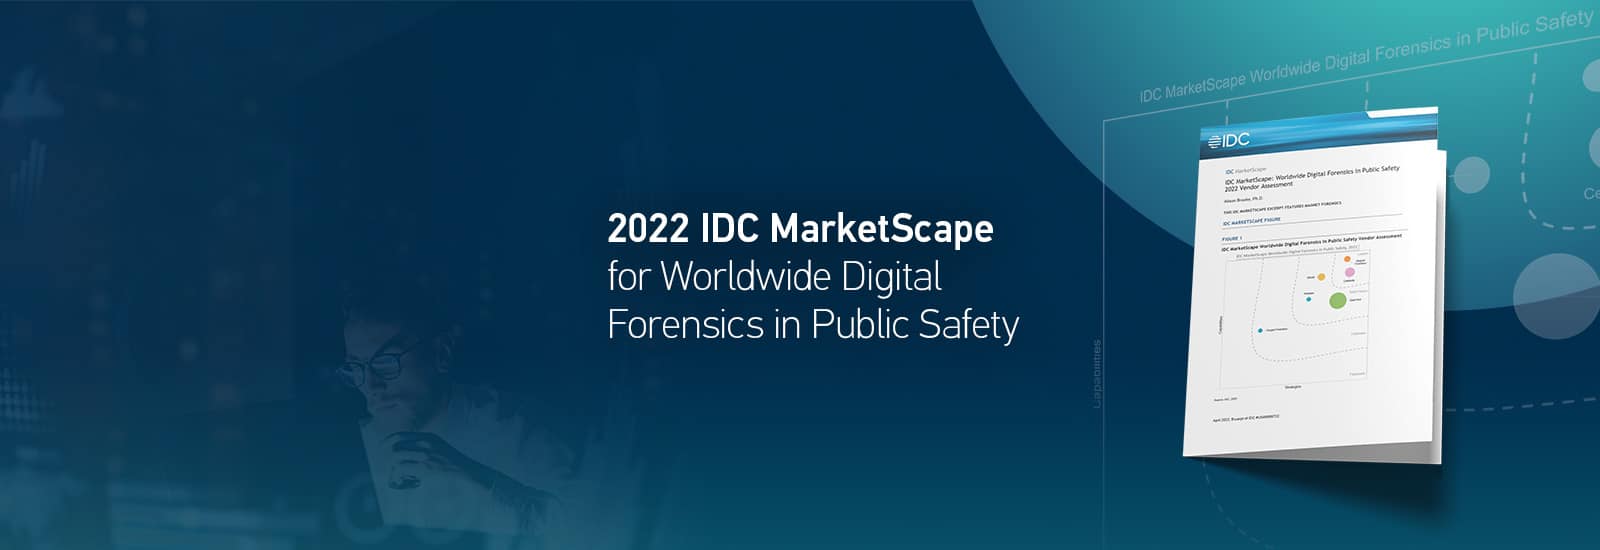 Decorative header for the IDC MarketScape report